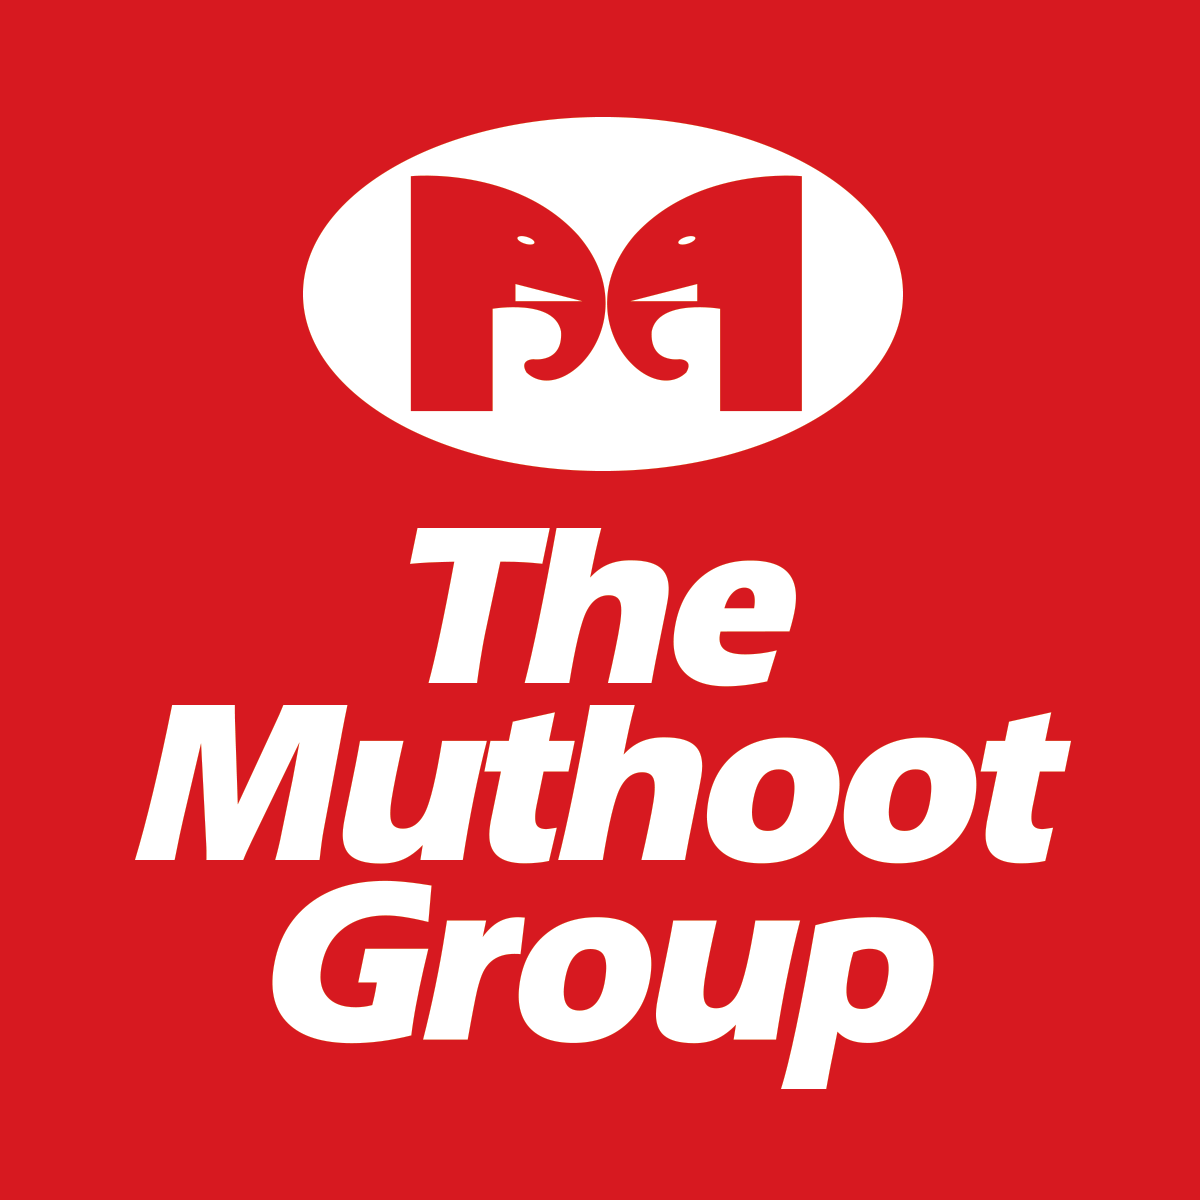 Muthoot Finance - Logo